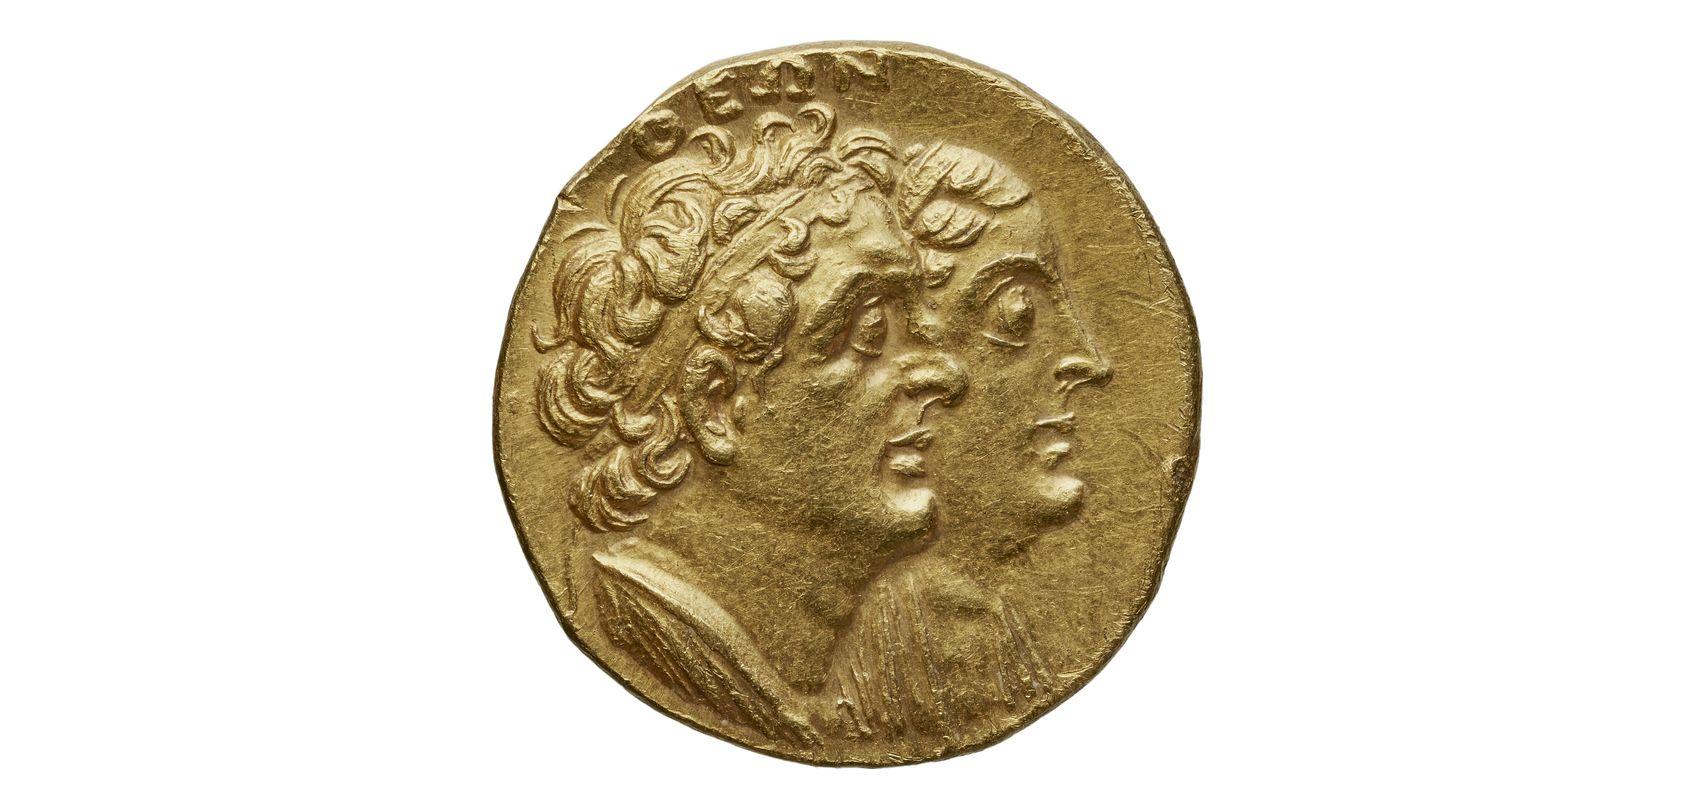 Monnaie : mnaieion, or, Égypte, Ptolémée II Philadelphe - 272-261 - BnF, département des Monnaies, médailles et antiques